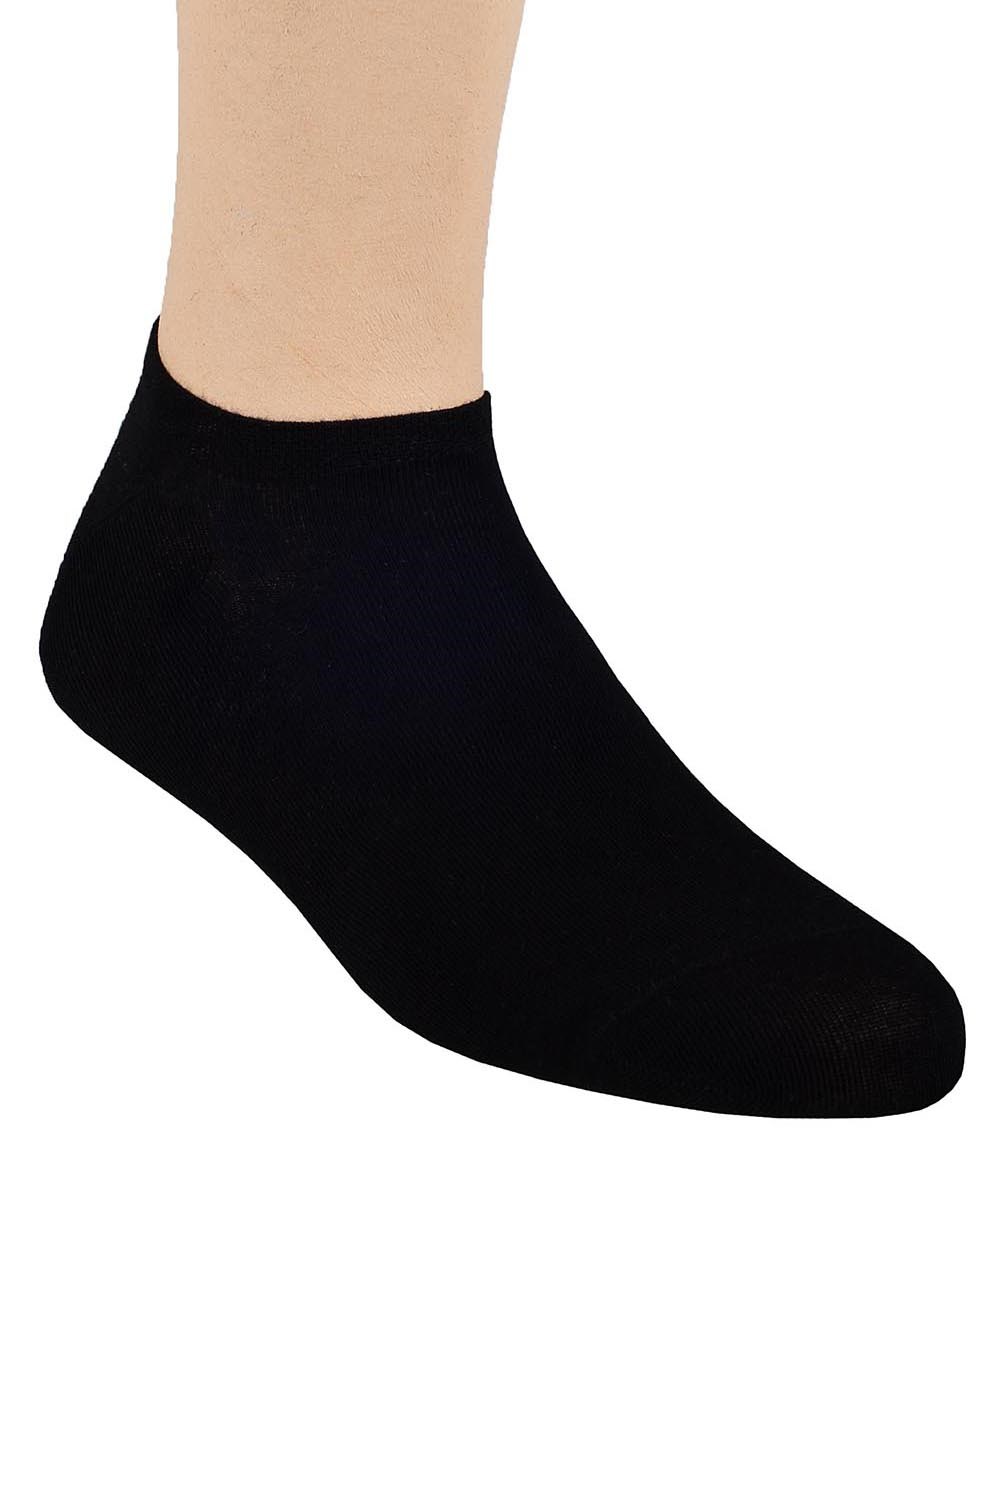 Ponožky nízké Steven 007